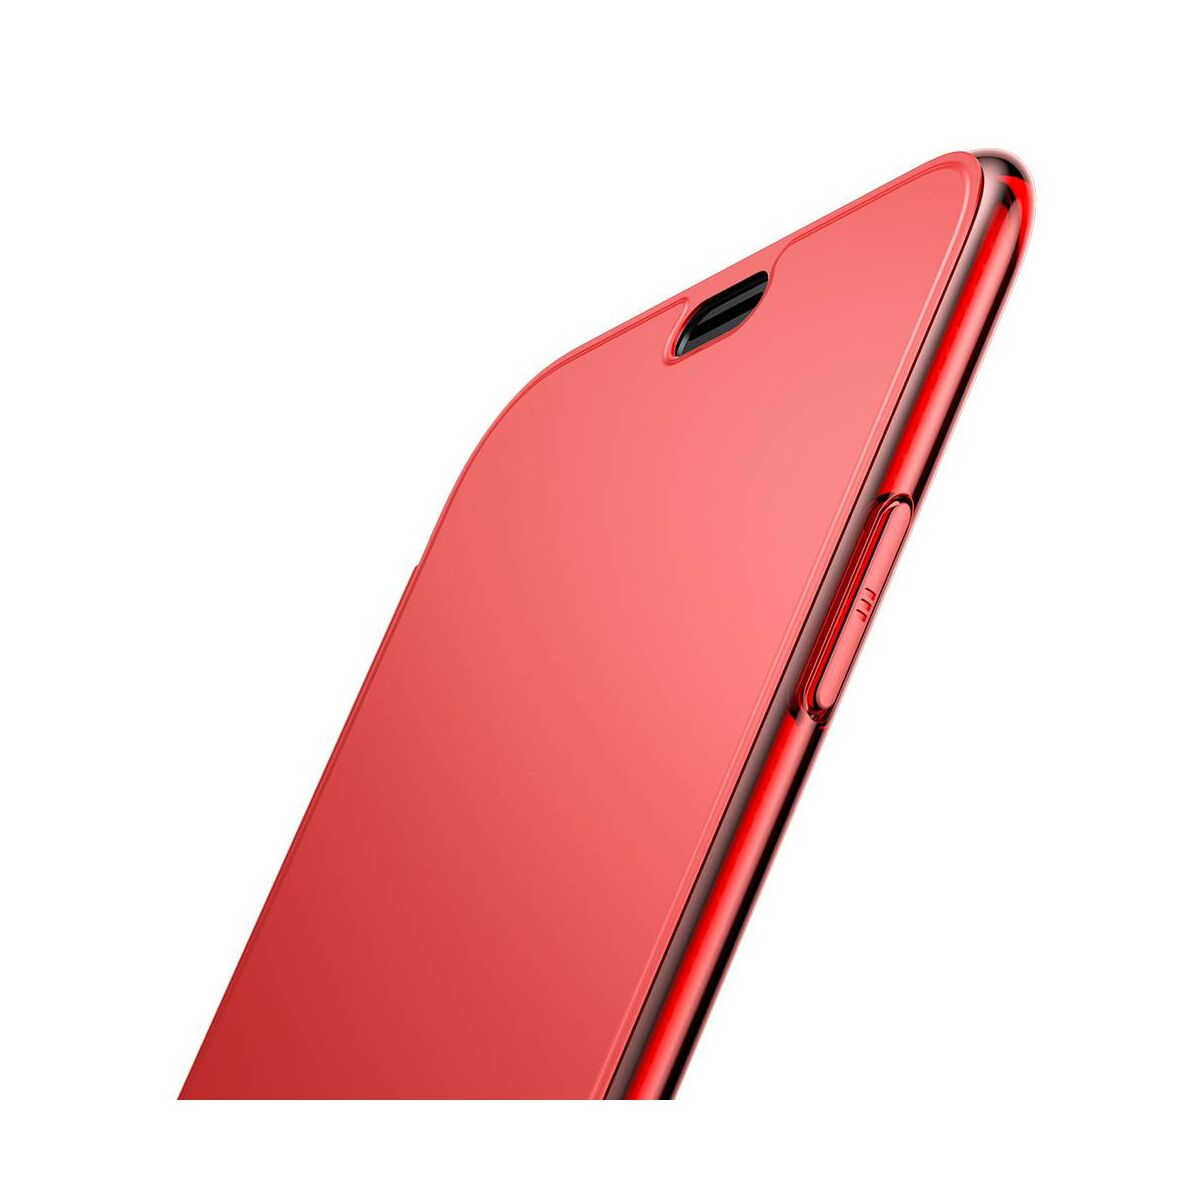 Kép 5/8 - Baseus iPhone XS tok, Touchable kihajtható, érintőfelületű tok, piros (WIAPIPH58-TS09)